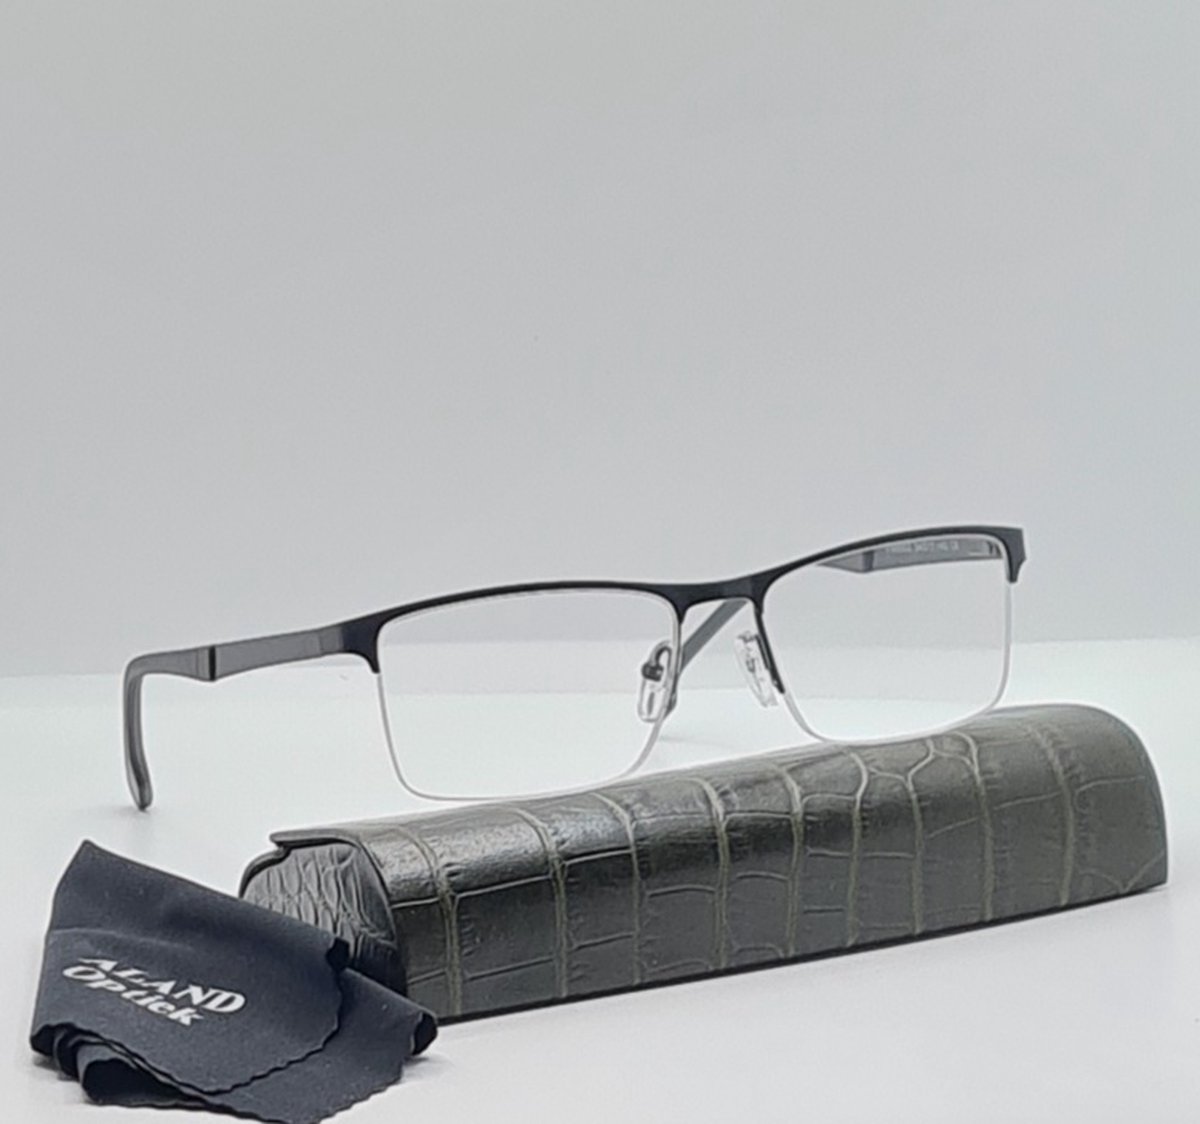 Unisex bril +2.0 / Leesbril op sterkte +2,0 / zwart / FM 8902 C6 / Leuke trendy unisex halfbril van metalen frame met stijlvolle brillenkoker en microvezeldoekje / metalen veerscharnier / lunette de lecture +2,0 / Aland optiek